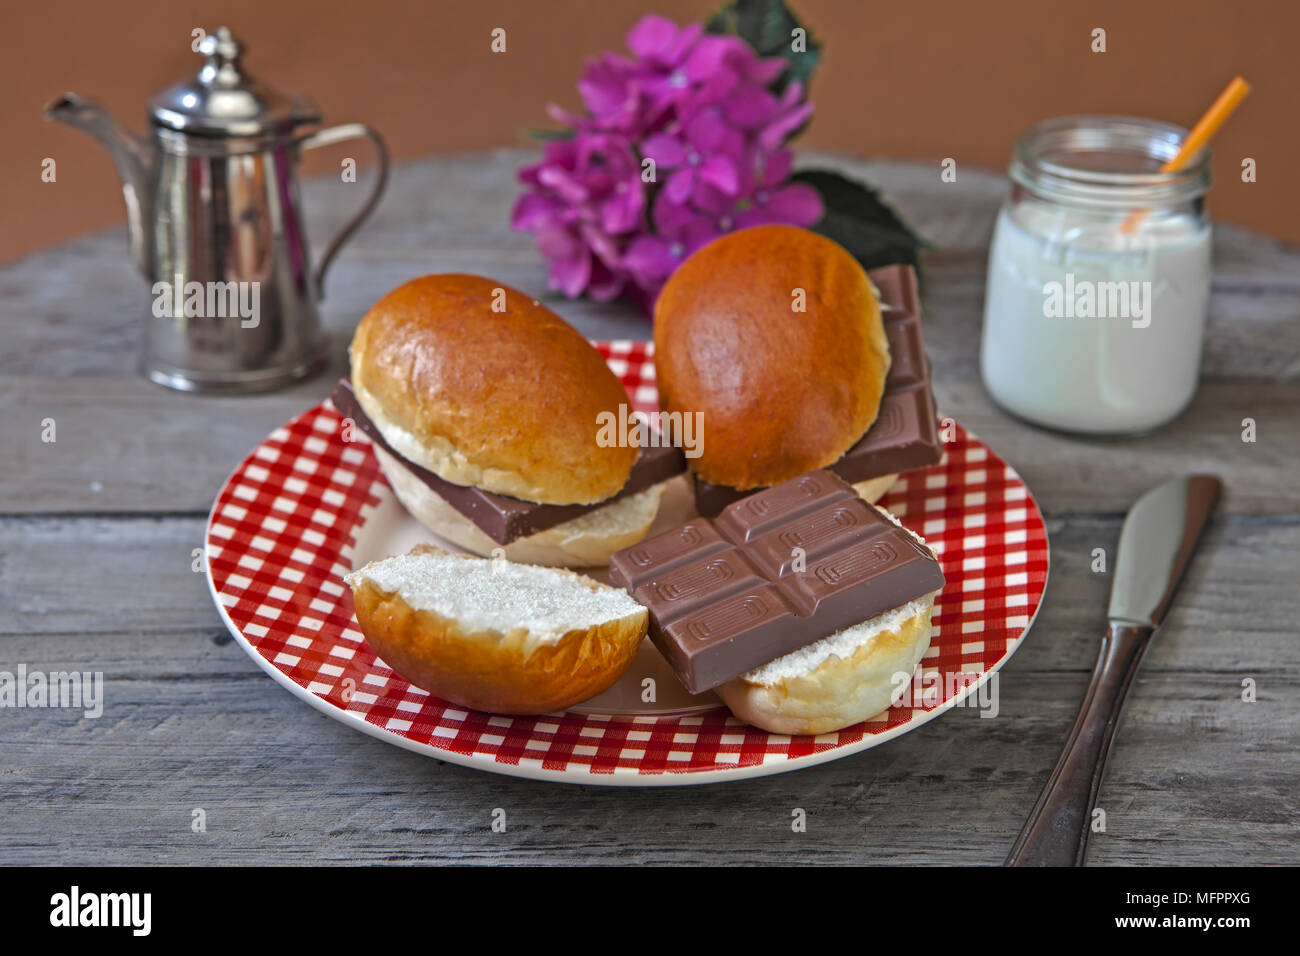 typische Schweizer Snack (nachmittags-Snack) - Schokolade auf ein frisches  Brot oder Brötchen Stockfotografie - Alamy